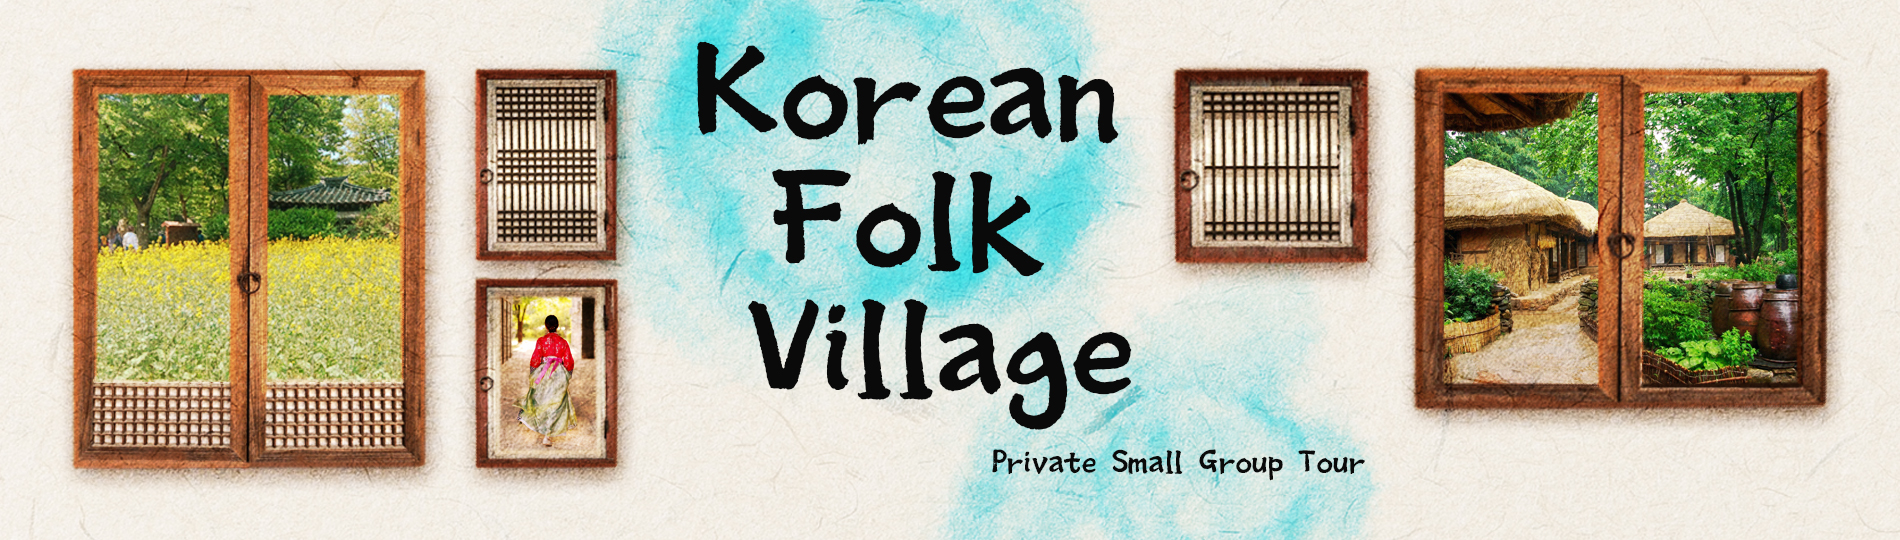 Korean folk village private small group tour